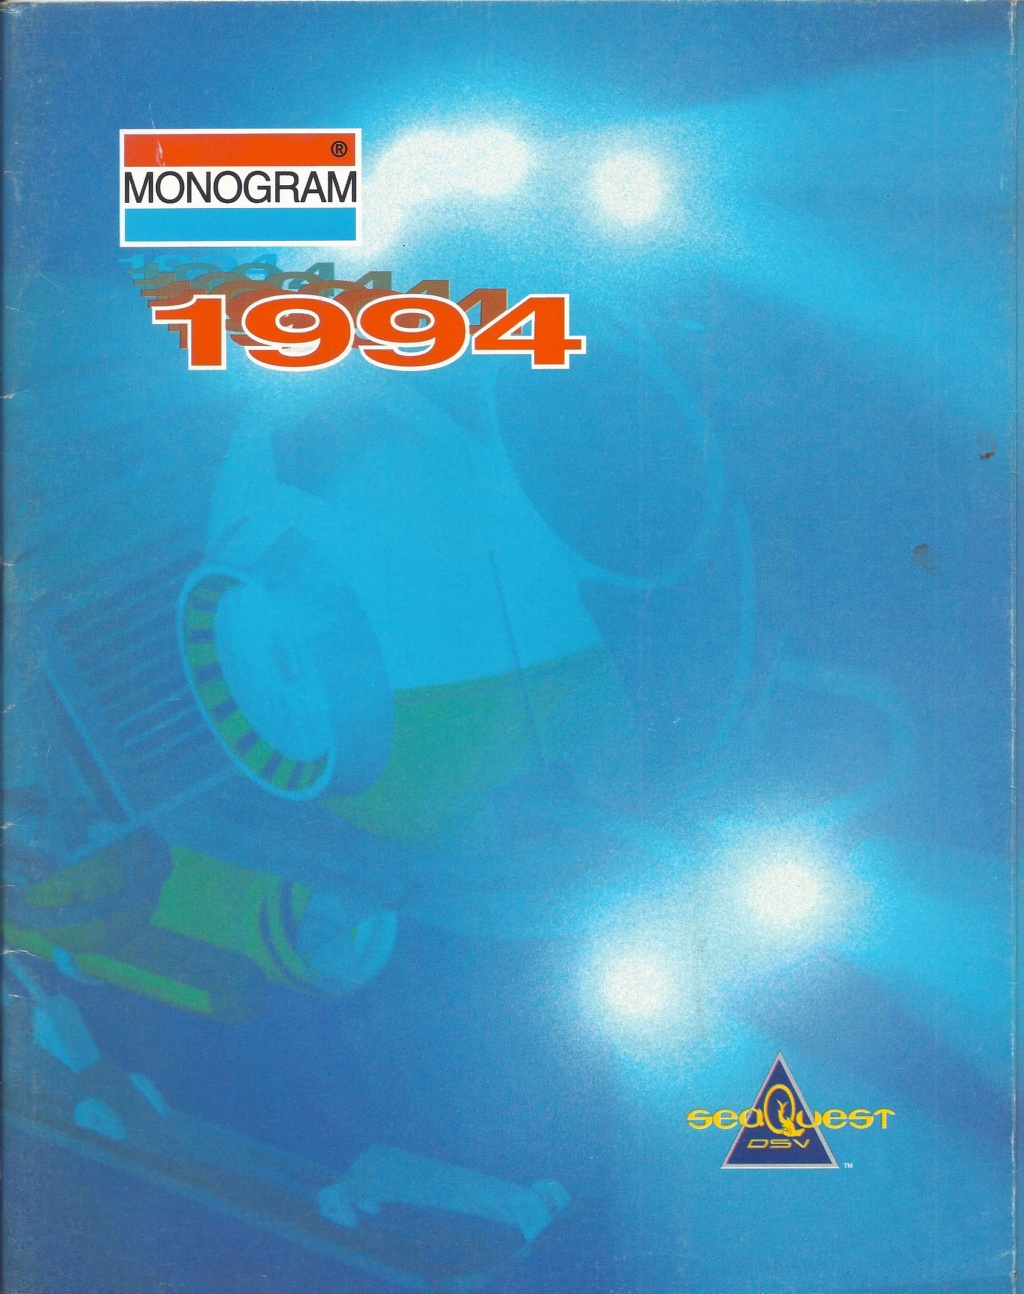 [MONOGRAM 1994] Catalogue 1994 Monog346